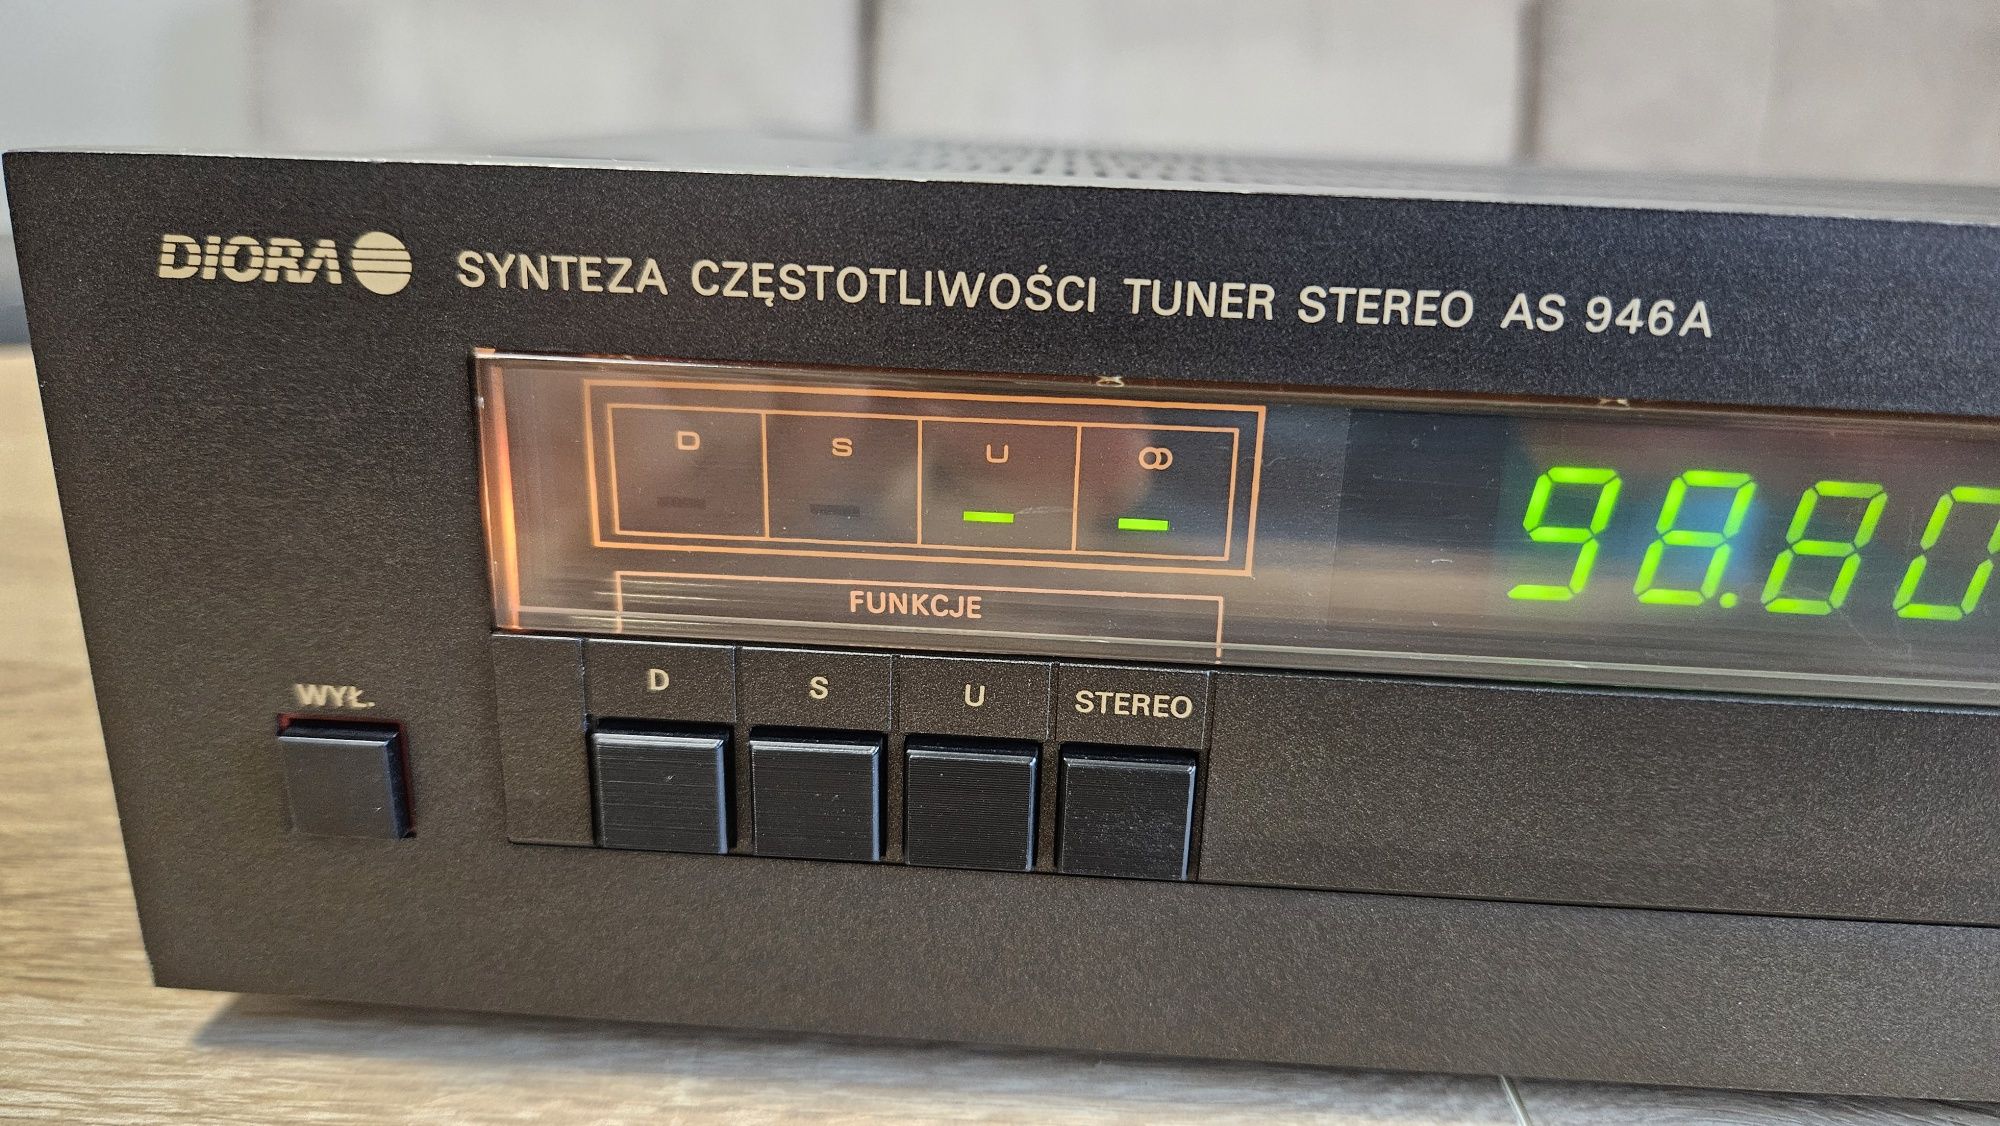 Diora AS 946A - tuner z syntezą częstotliwości. Stan bdb